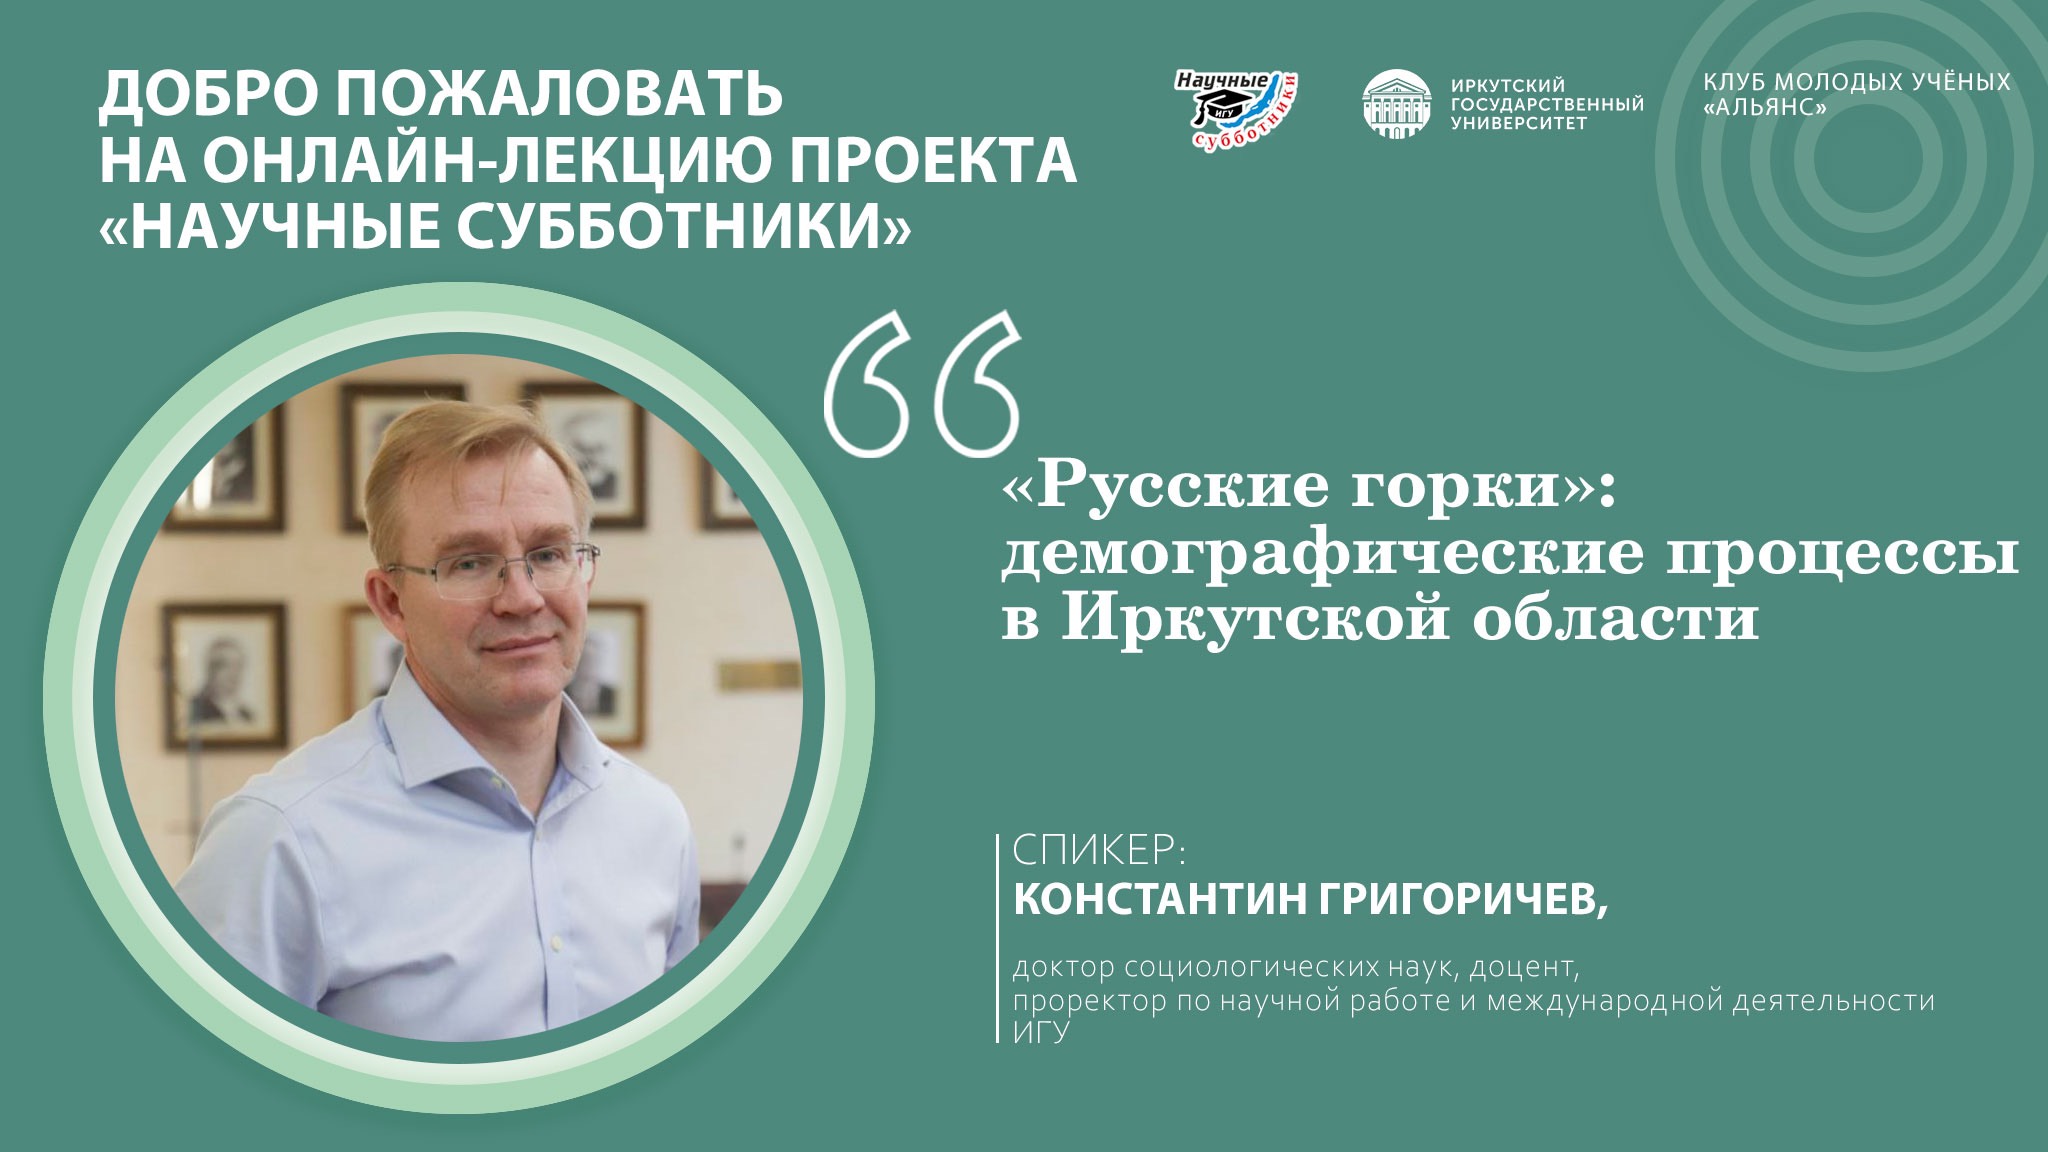 «Русские горки»: демографические процессы в Иркутской области»